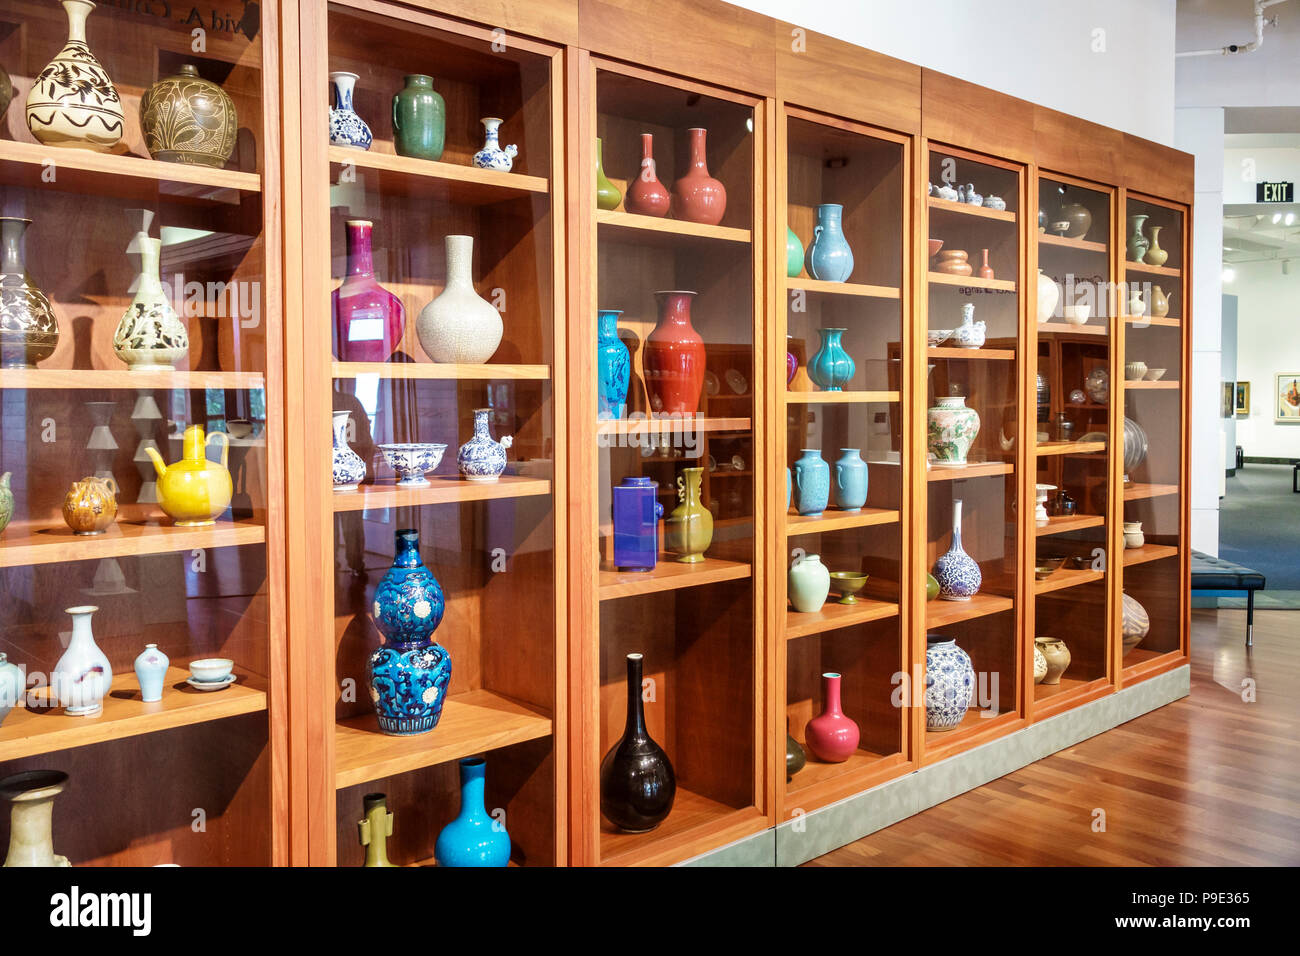 Gainesville Florida,Université de Floride,Samuel P. Harn Museum of Art,galerie,exposition,collection de céramiques asiatiques,vases,poterie,intérieur,FL17102 Banque D'Images